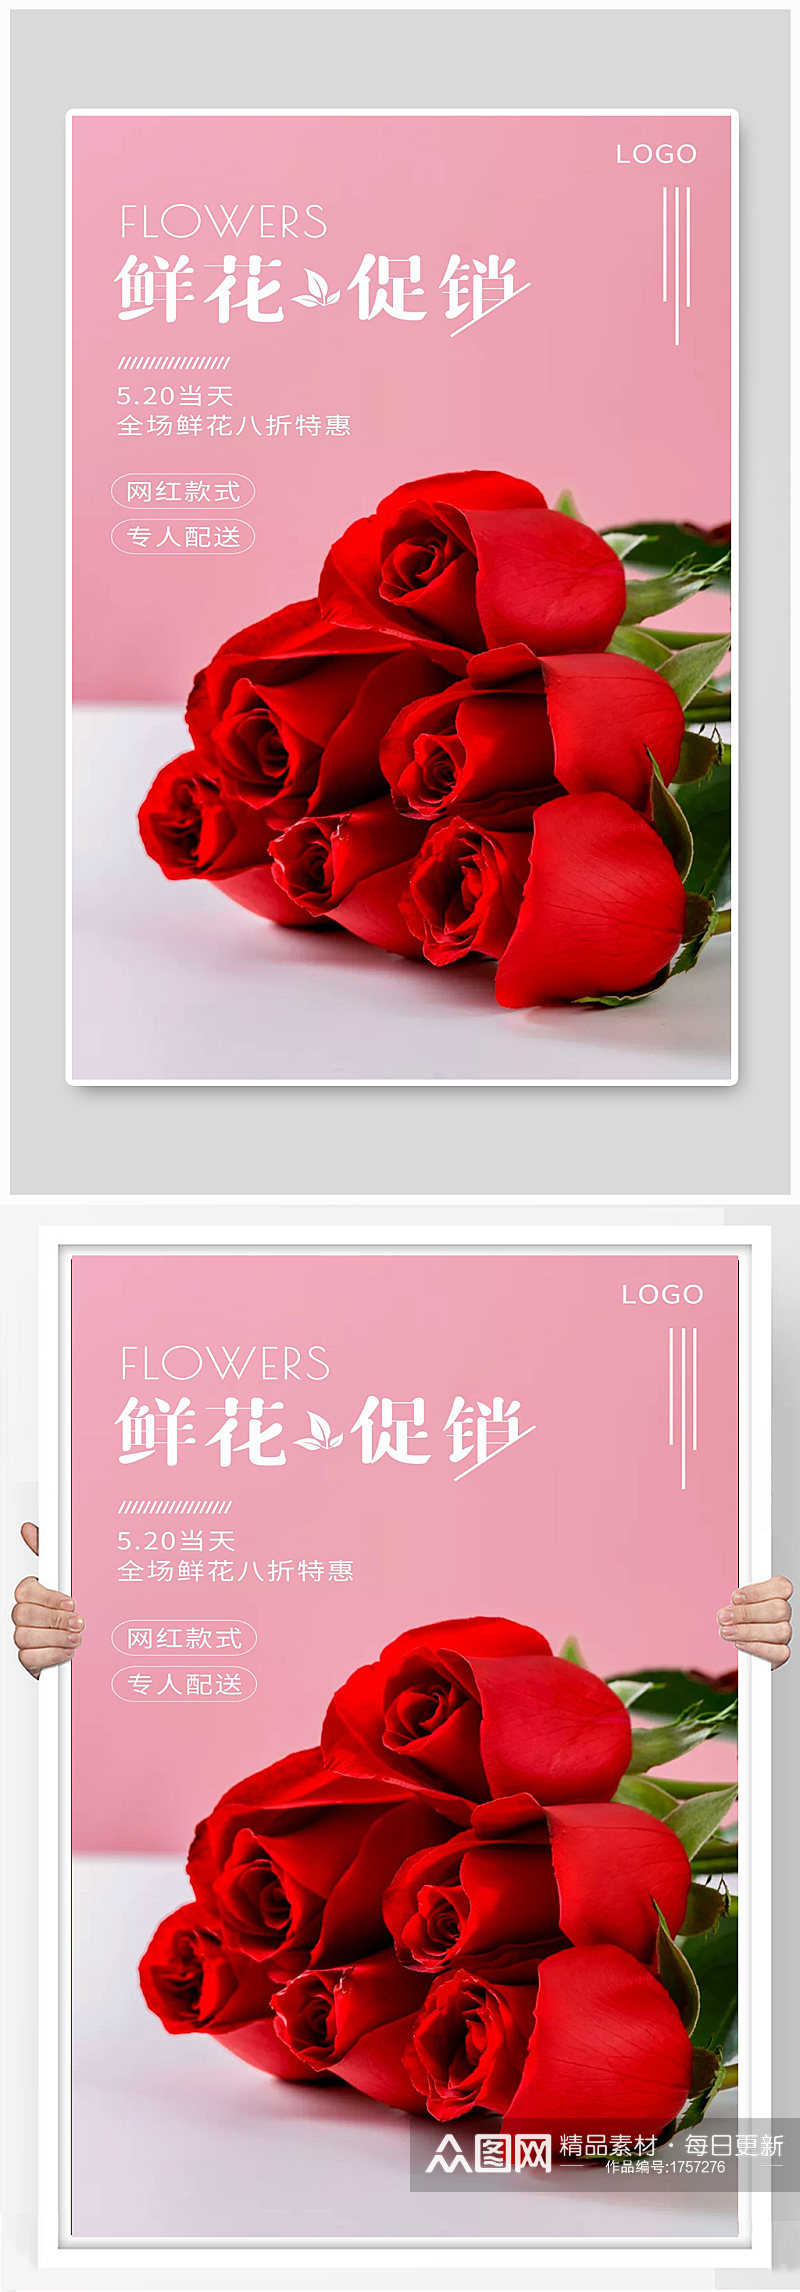 玫瑰花宣传海报设计素材